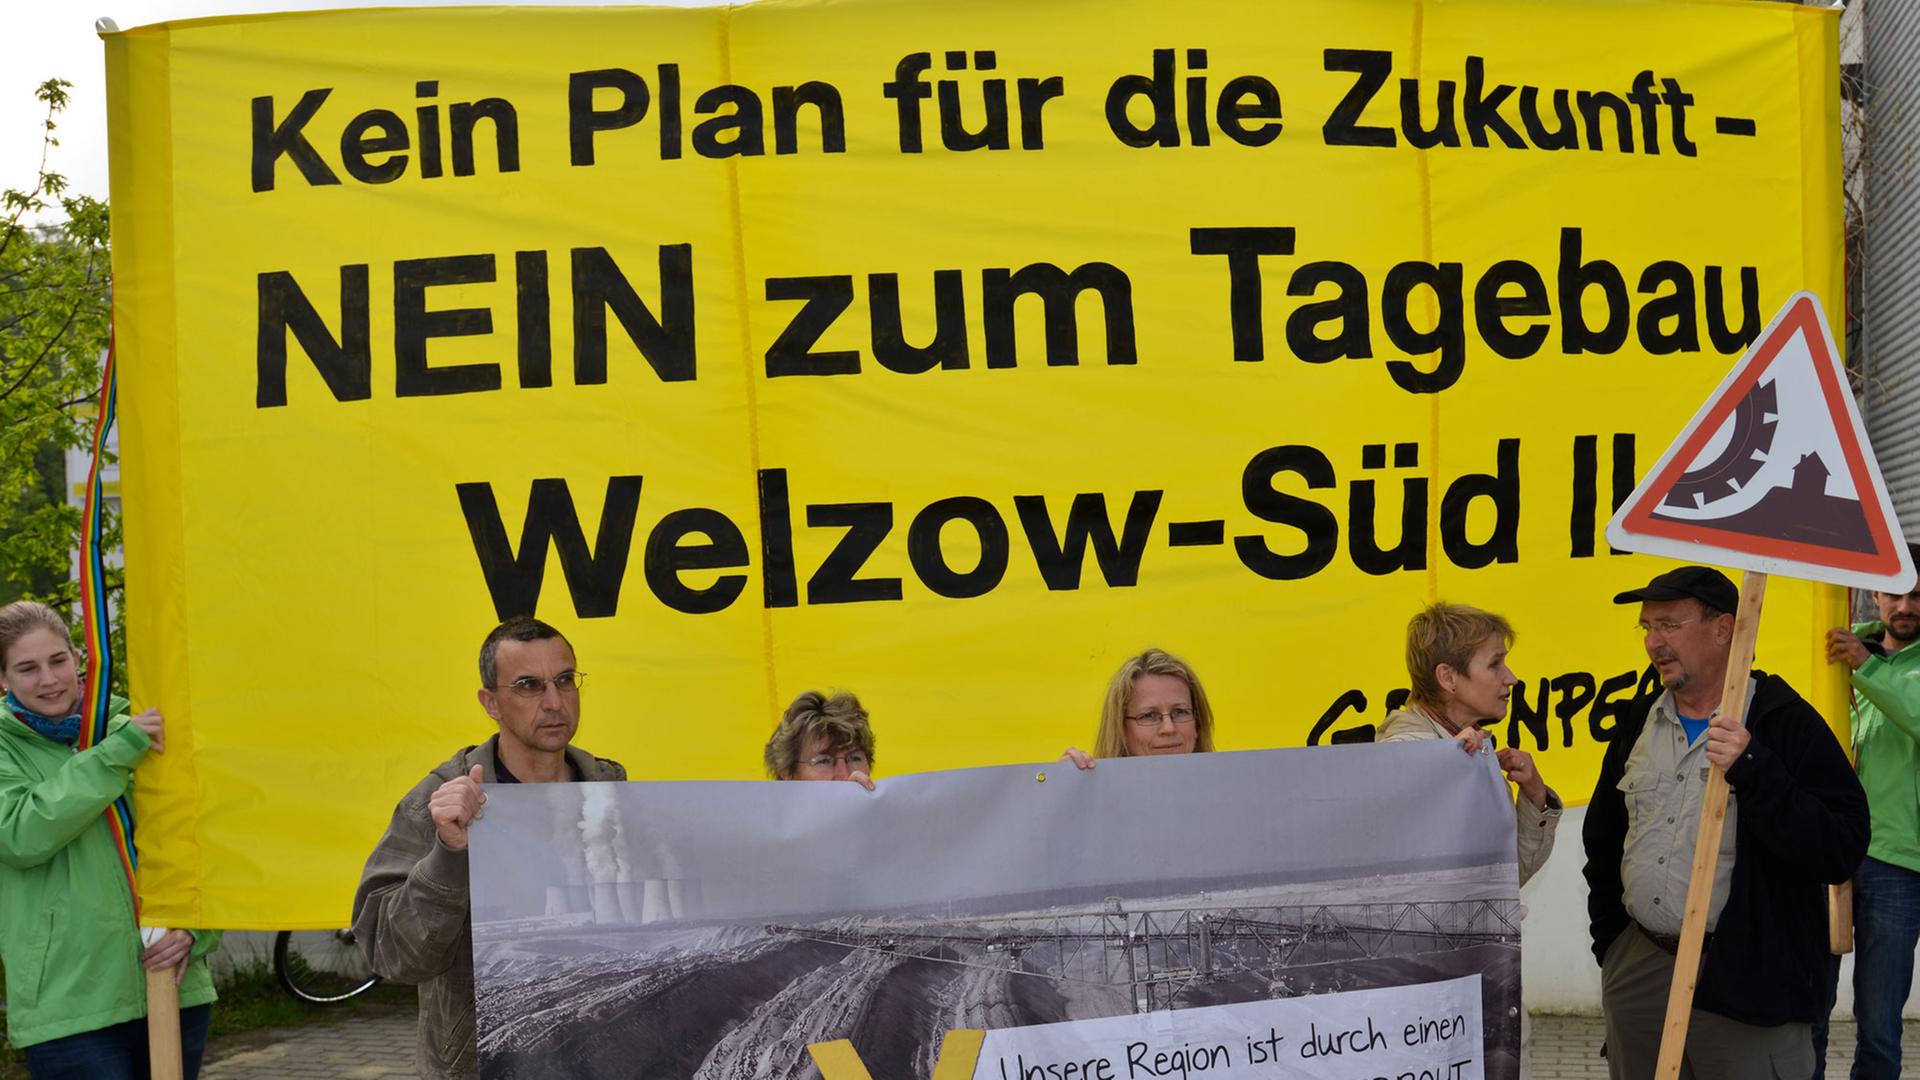 Blick auf Braunkohlegegner und Greenpeace-Aktivisten, die mit einem Transparent mit der Aufschrift "Kein Plan für die Zukunft - Nein zum Tagebau Welzow-Süd II" vor der Sitzung des Braunkohlenausschusses in Cottbus (Brandenburg) protestieren.